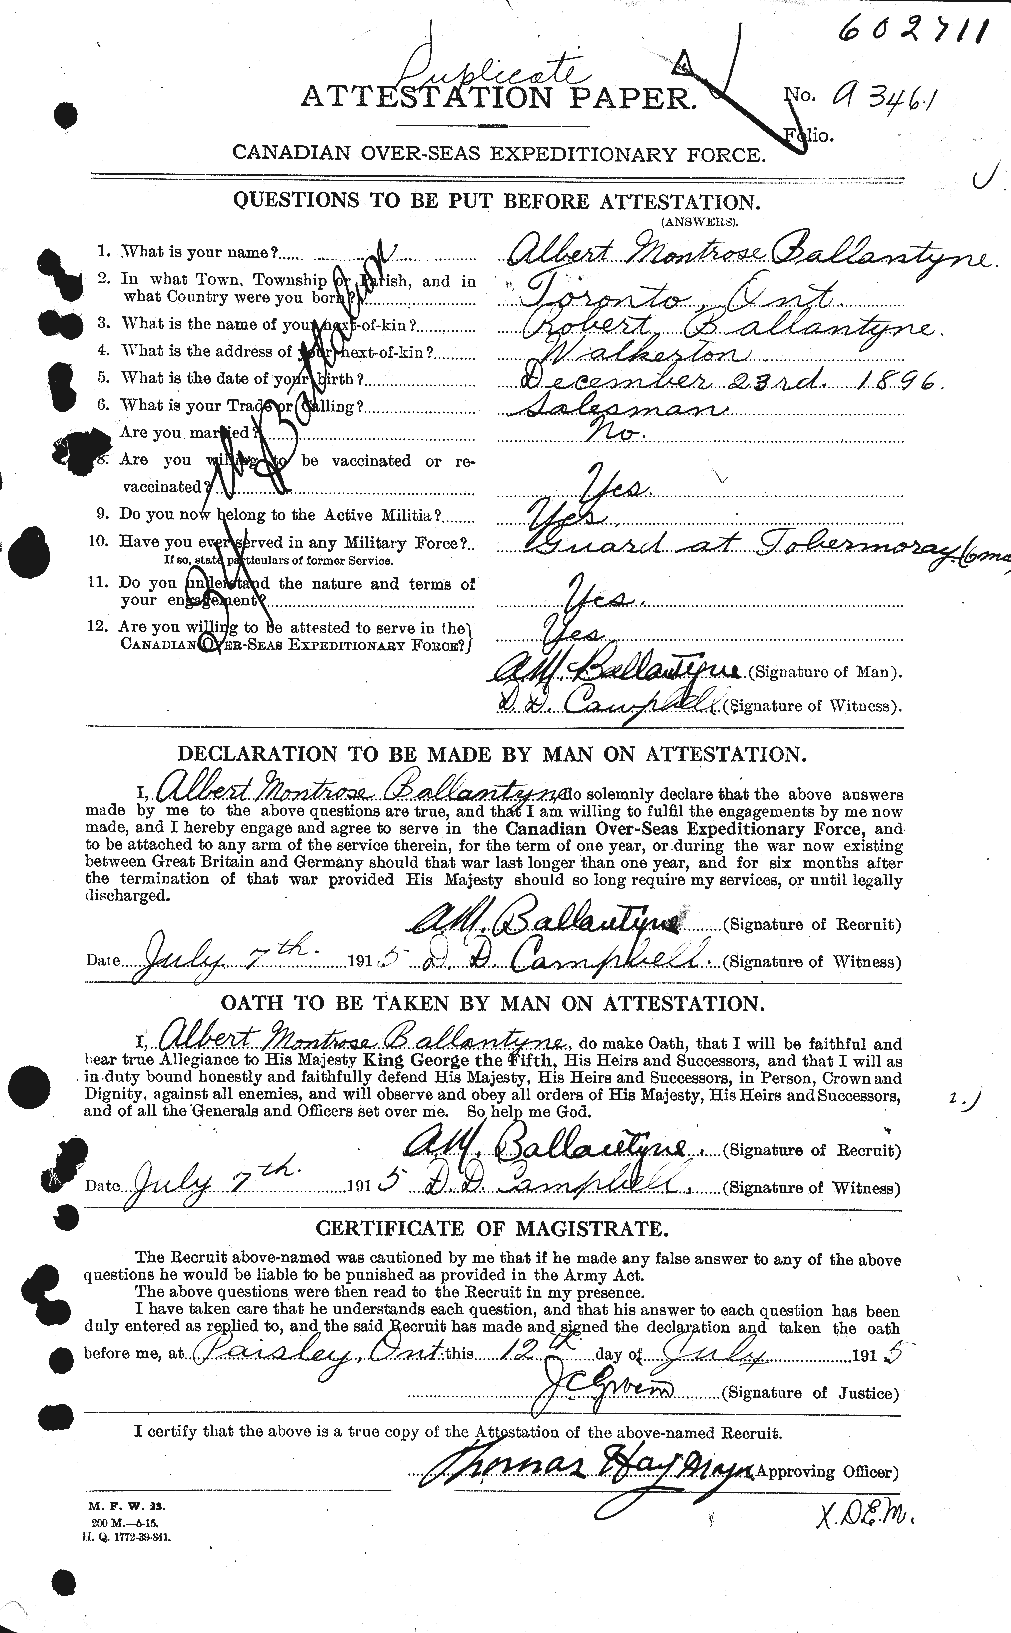 Dossiers du Personnel de la Première Guerre mondiale - CEC 219837a